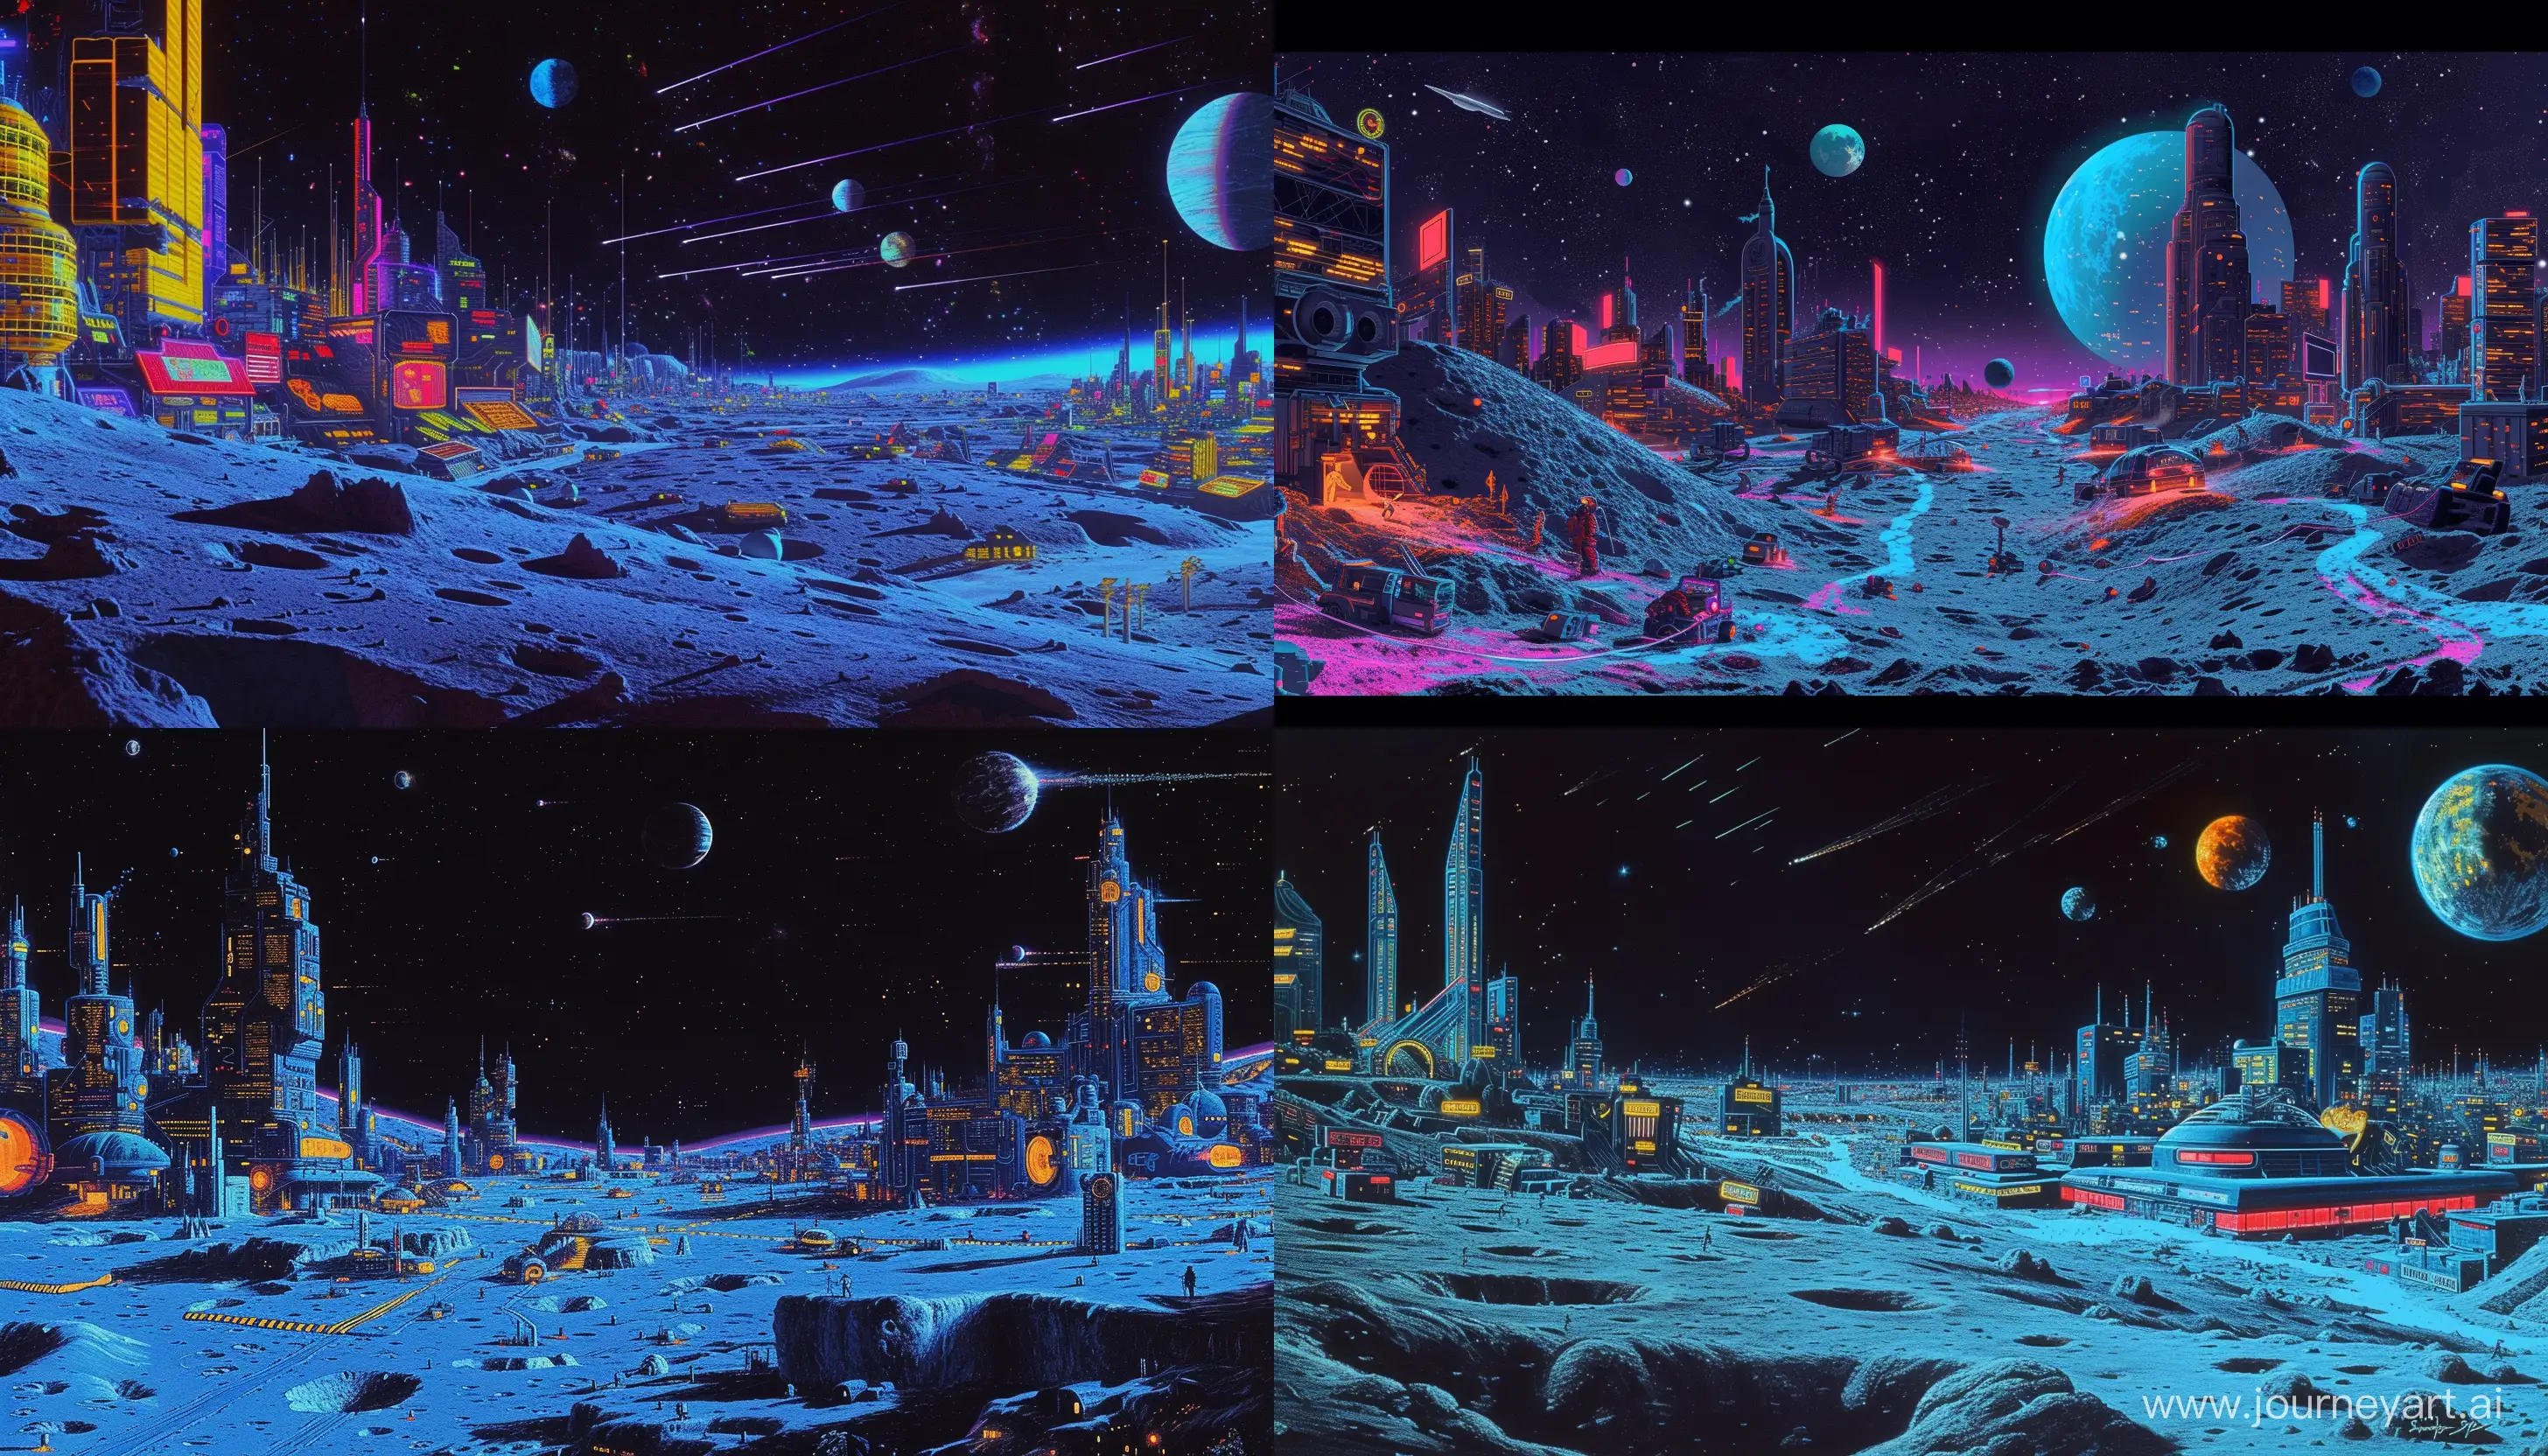 Futuristic-1980sStyle-Cyberpunk-Moon-City